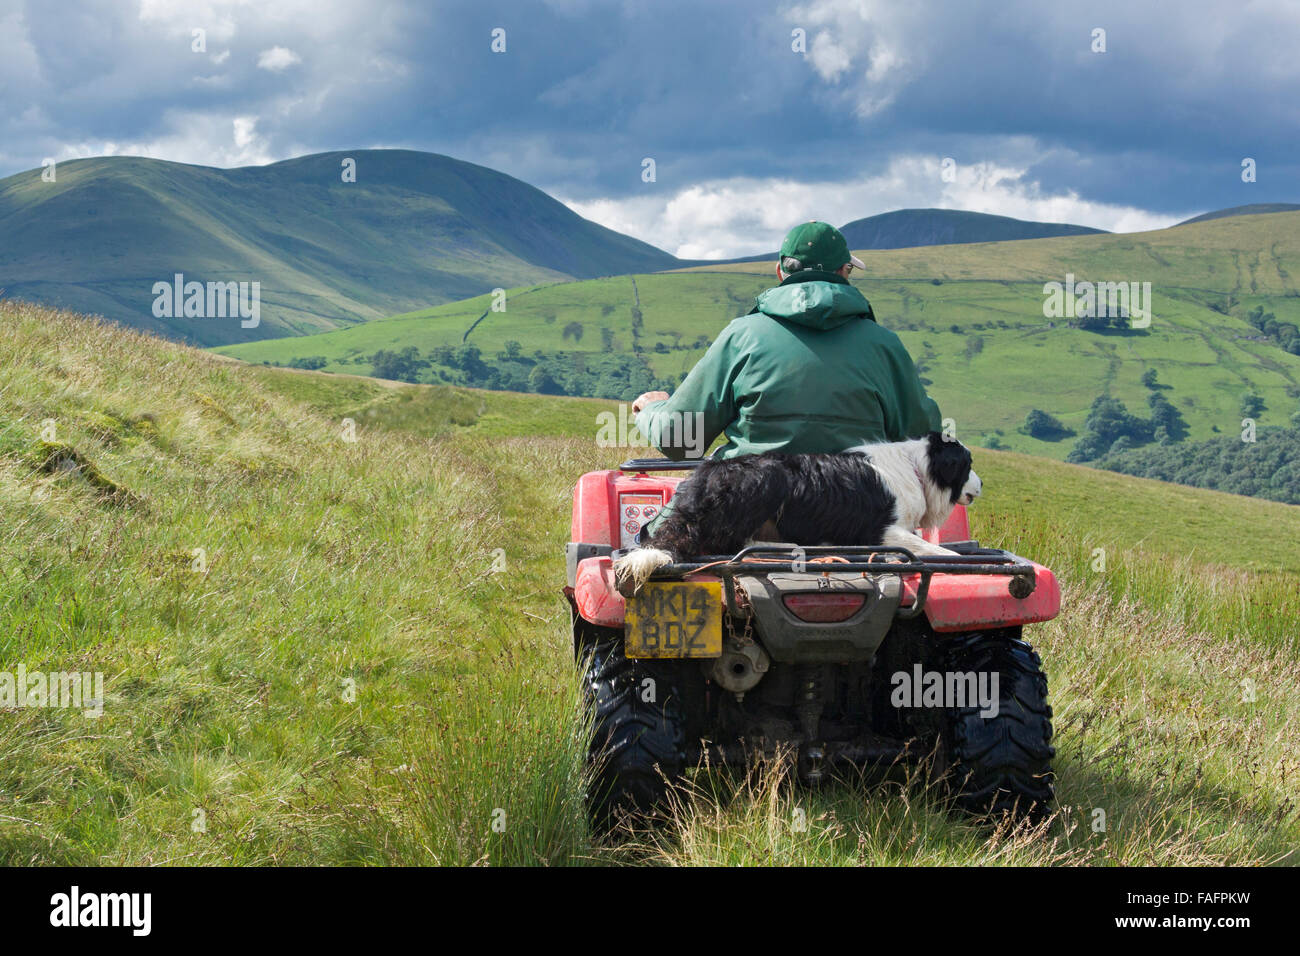 Pastore su di una moto quad con sheepdog seduto dietro di lui, guida sulla brughiera, REGNO UNITO Foto Stock